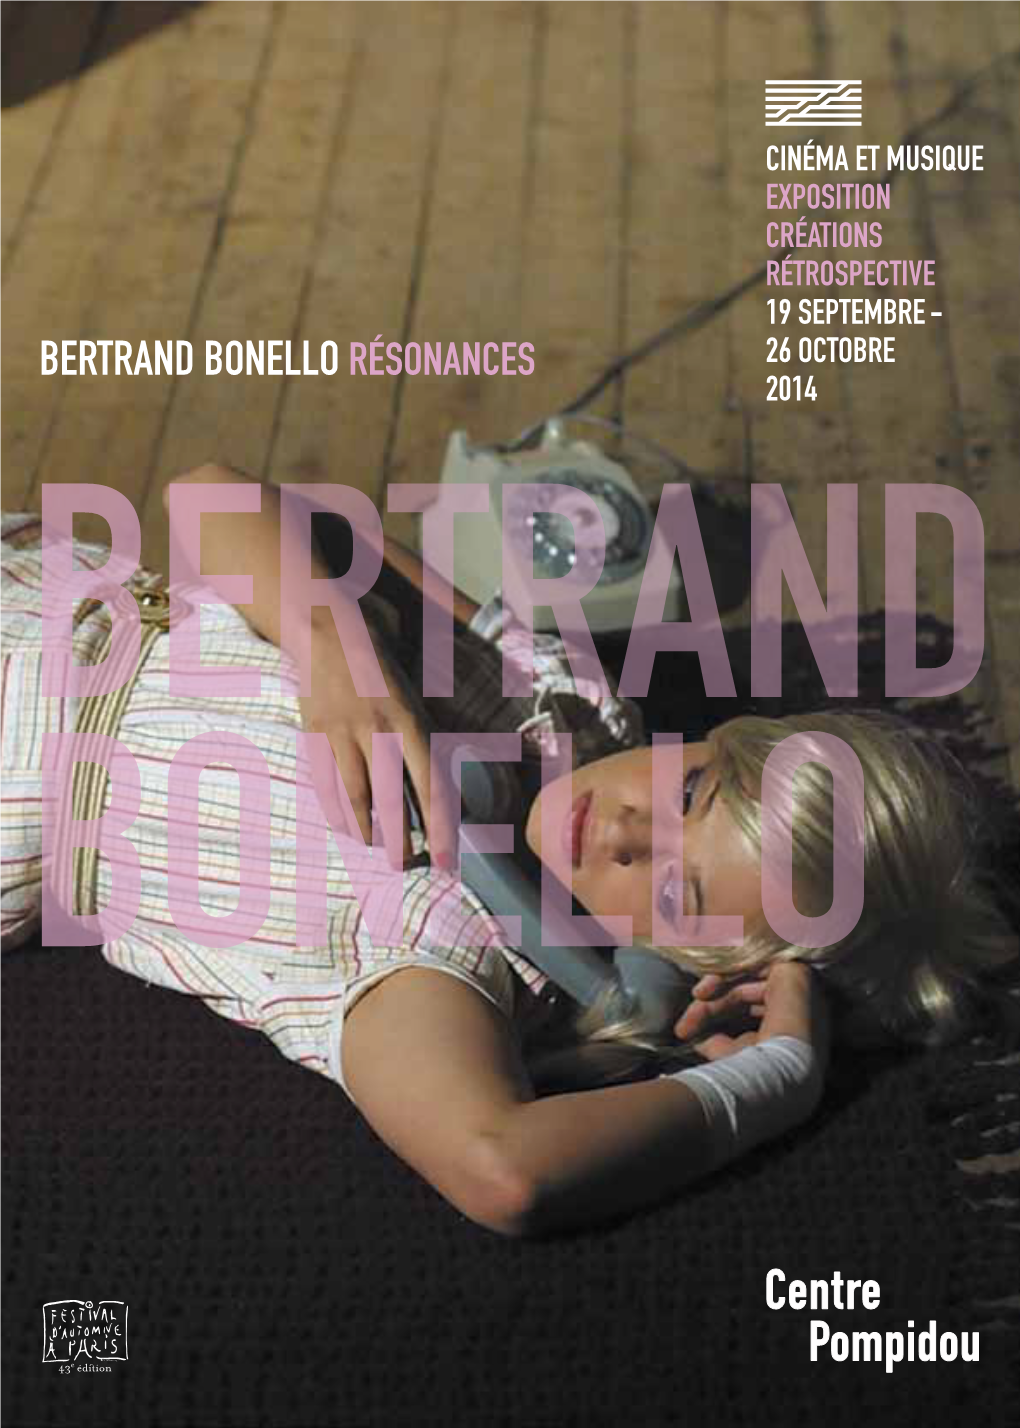 BERTRAND BONELLO RÉSONANCES 26 OCTOBRE 2014 BERTRANDBE BONELLOBON Bertrand Bonello 1